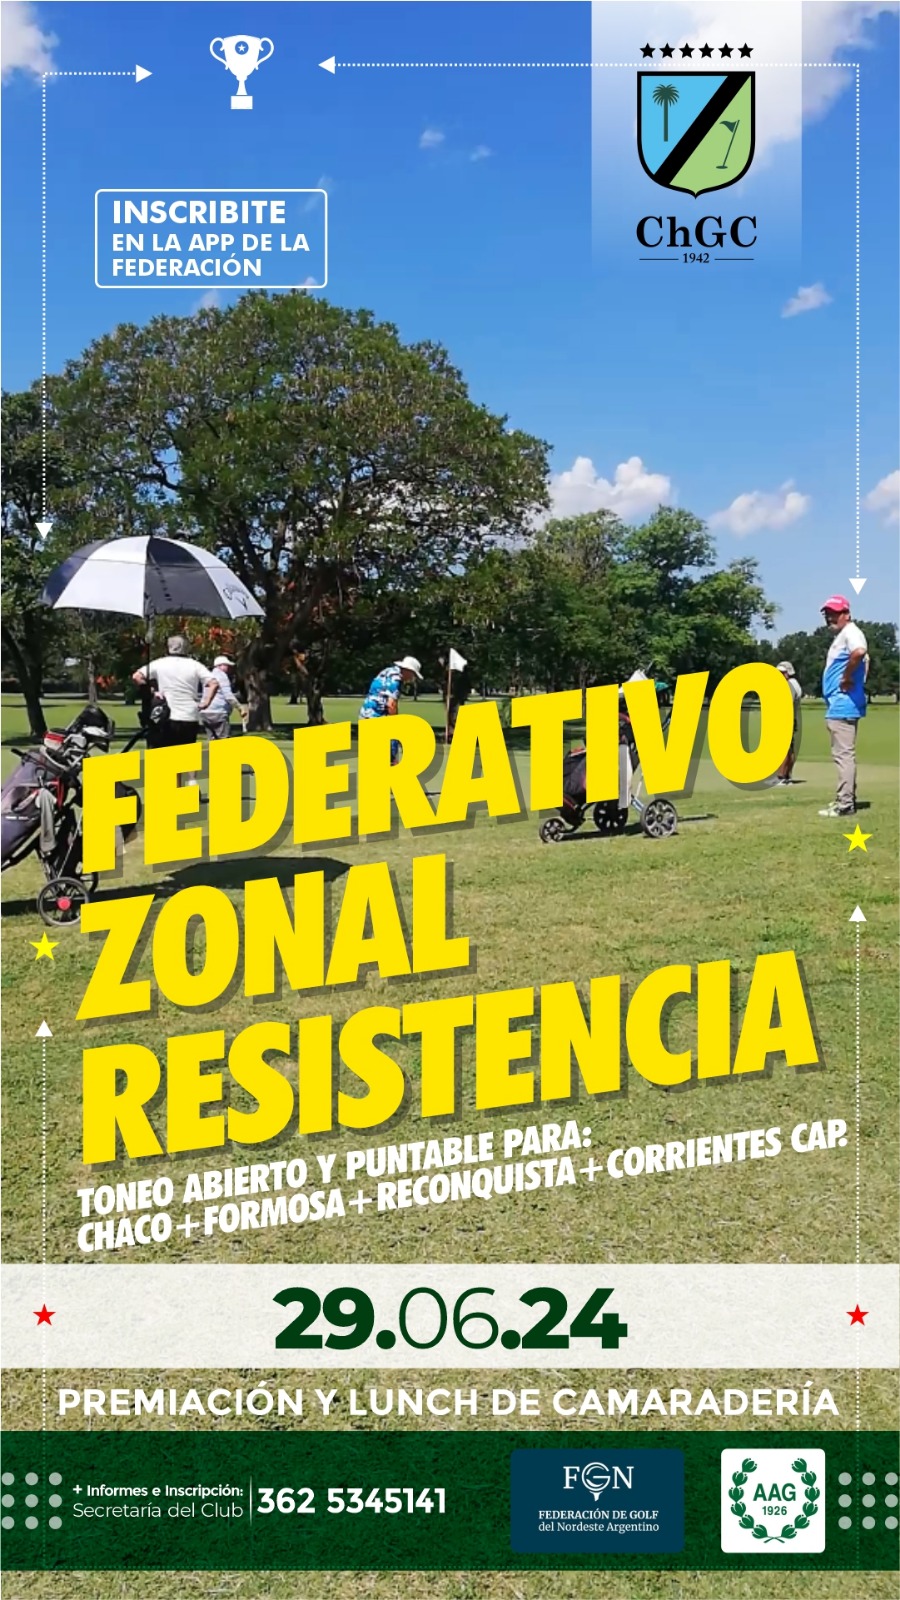 FEDERATIVO REGIONAL RESISTENCIA 29-06